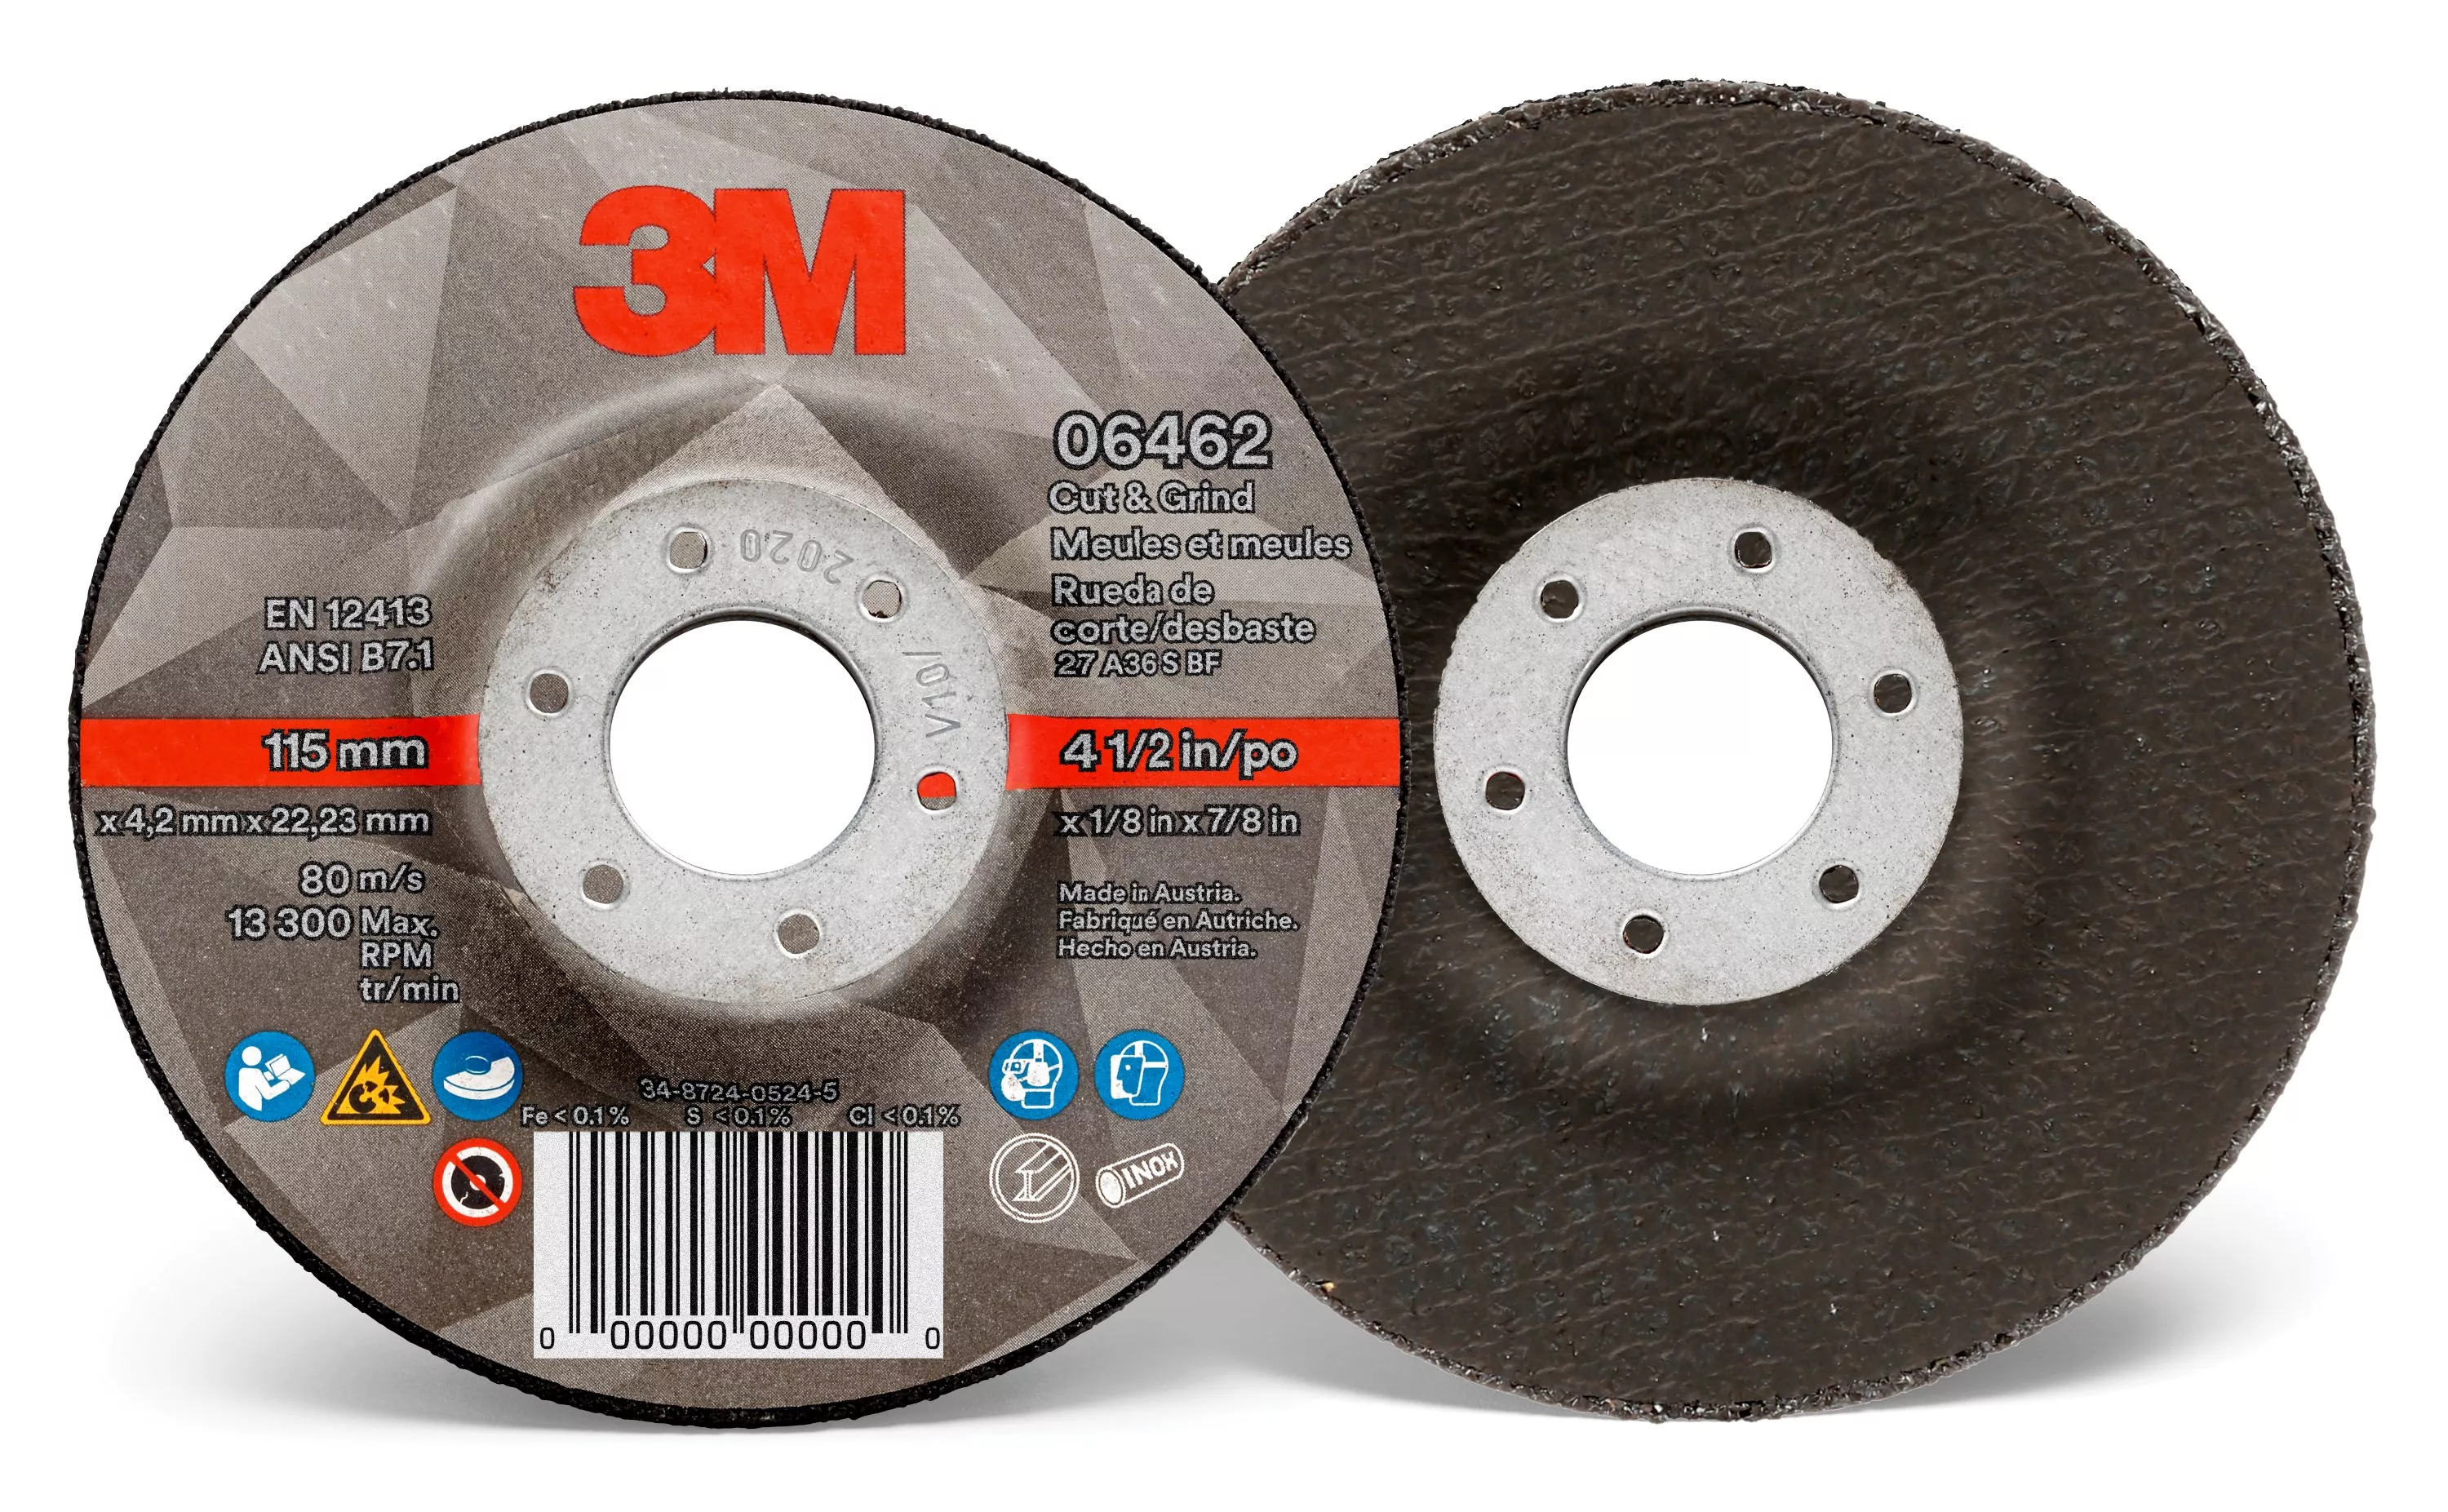 3M™ Cut & Grind Wheel, 06462, Type 27, 4-1/2 in x 1/8 in x 7/8 in,
10/Carton, 20 ea/Case